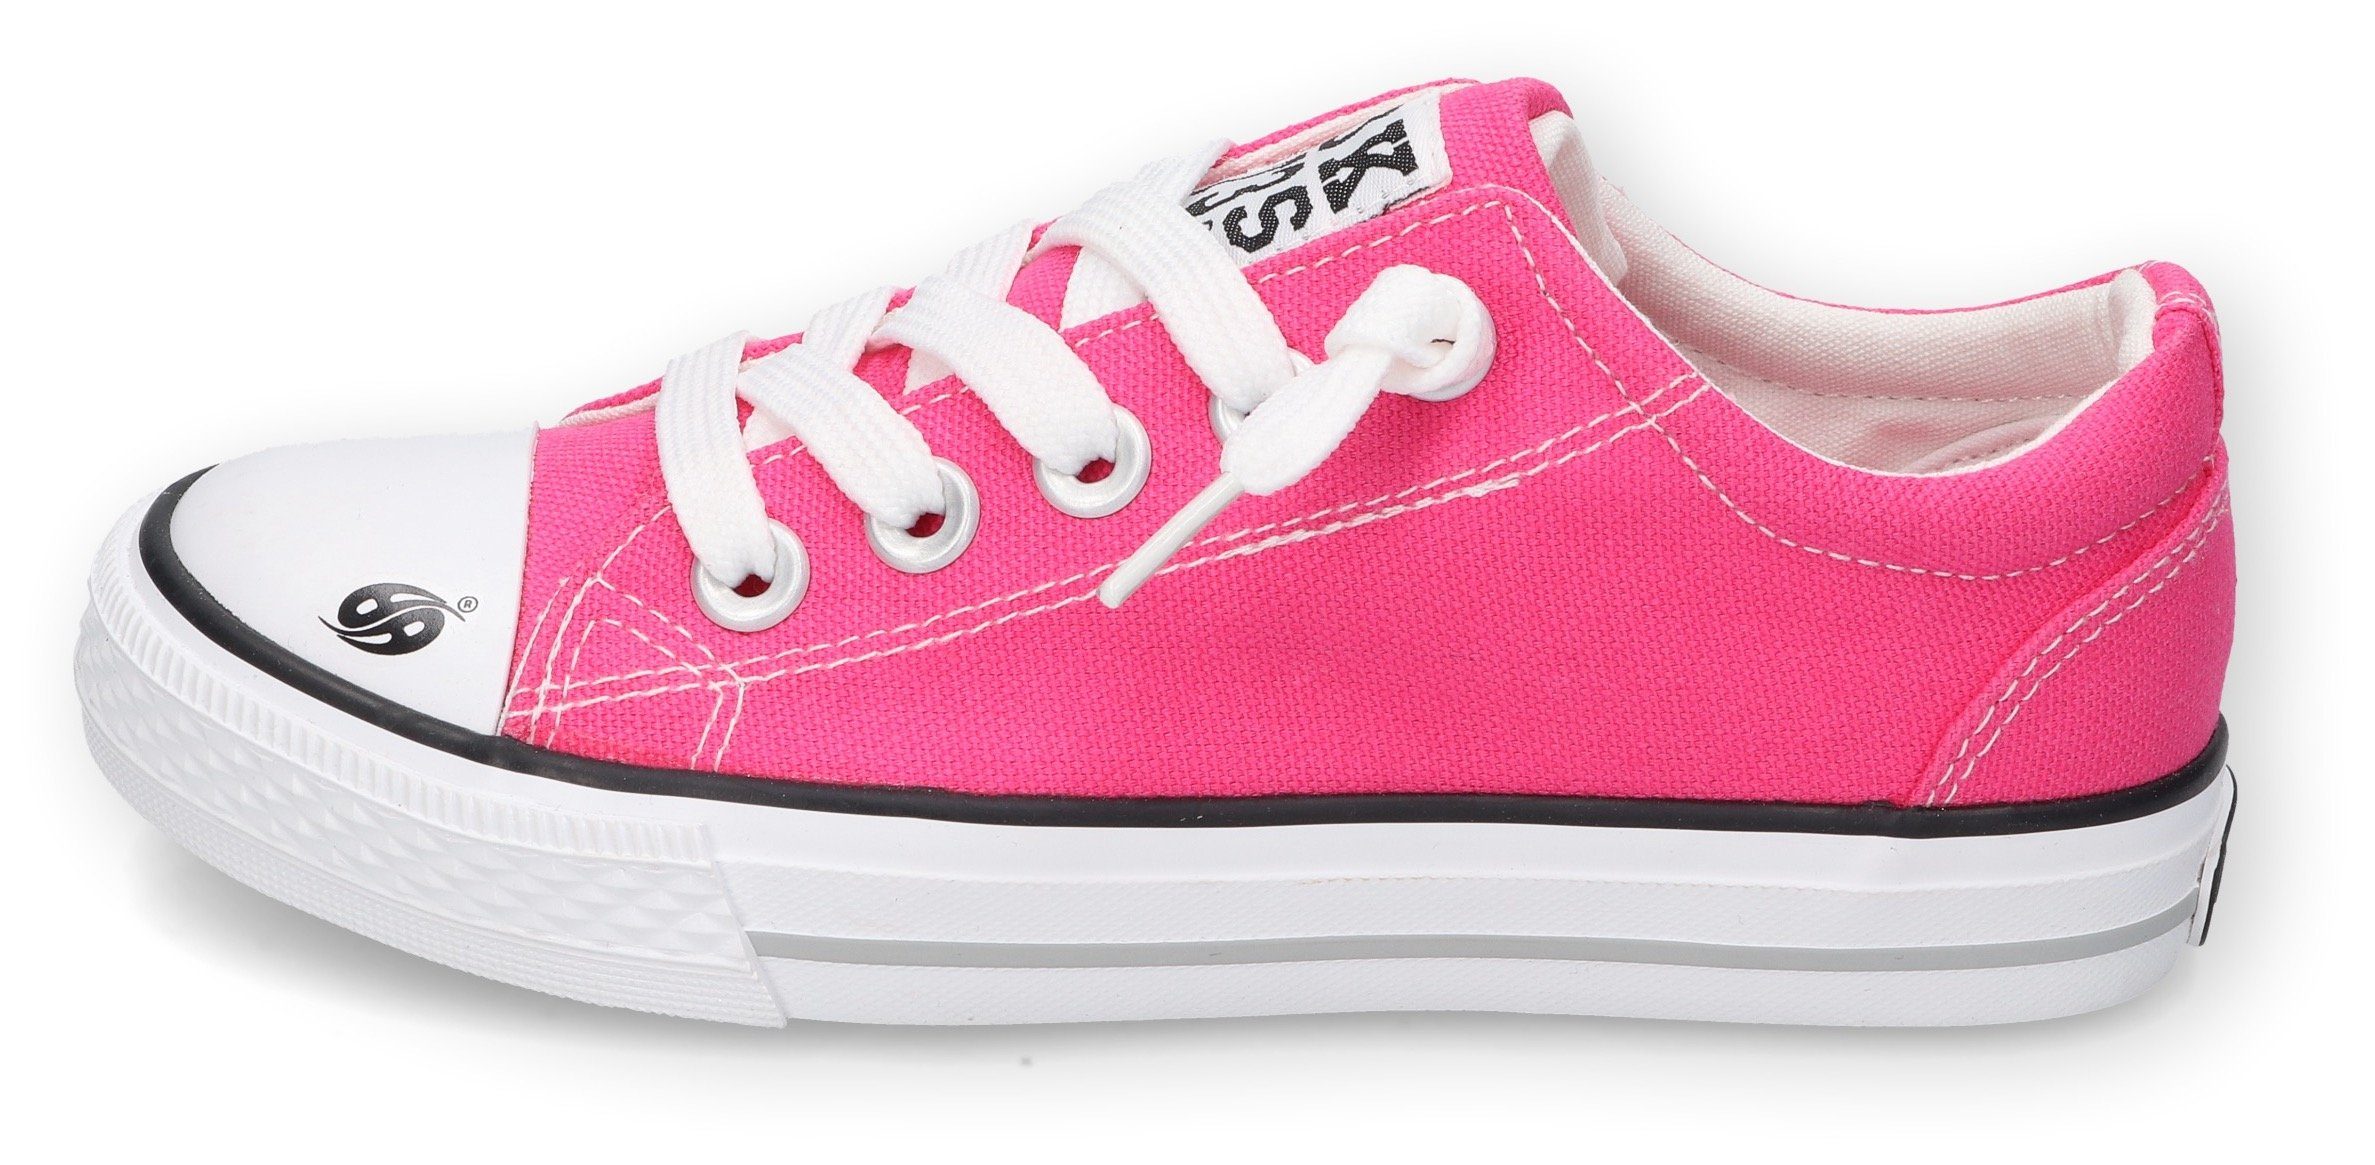 Dockers by Slip-On Optik Gerli in pink klassischer Sneaker